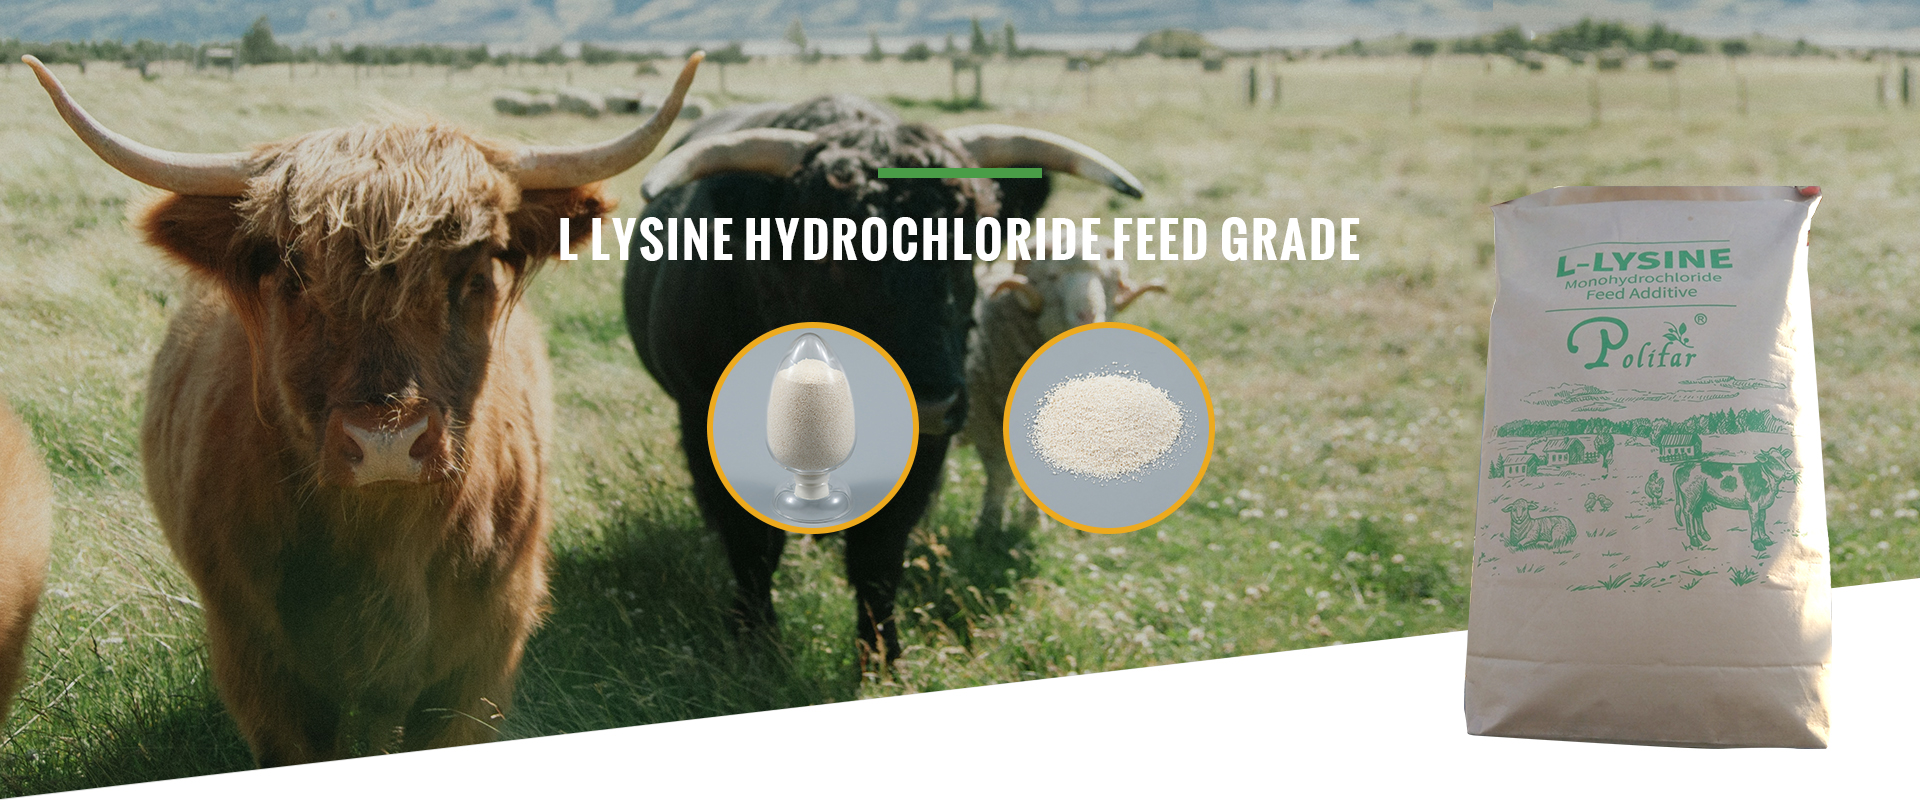 L LYSINE HYDROCHLORIDE FEED GRADE